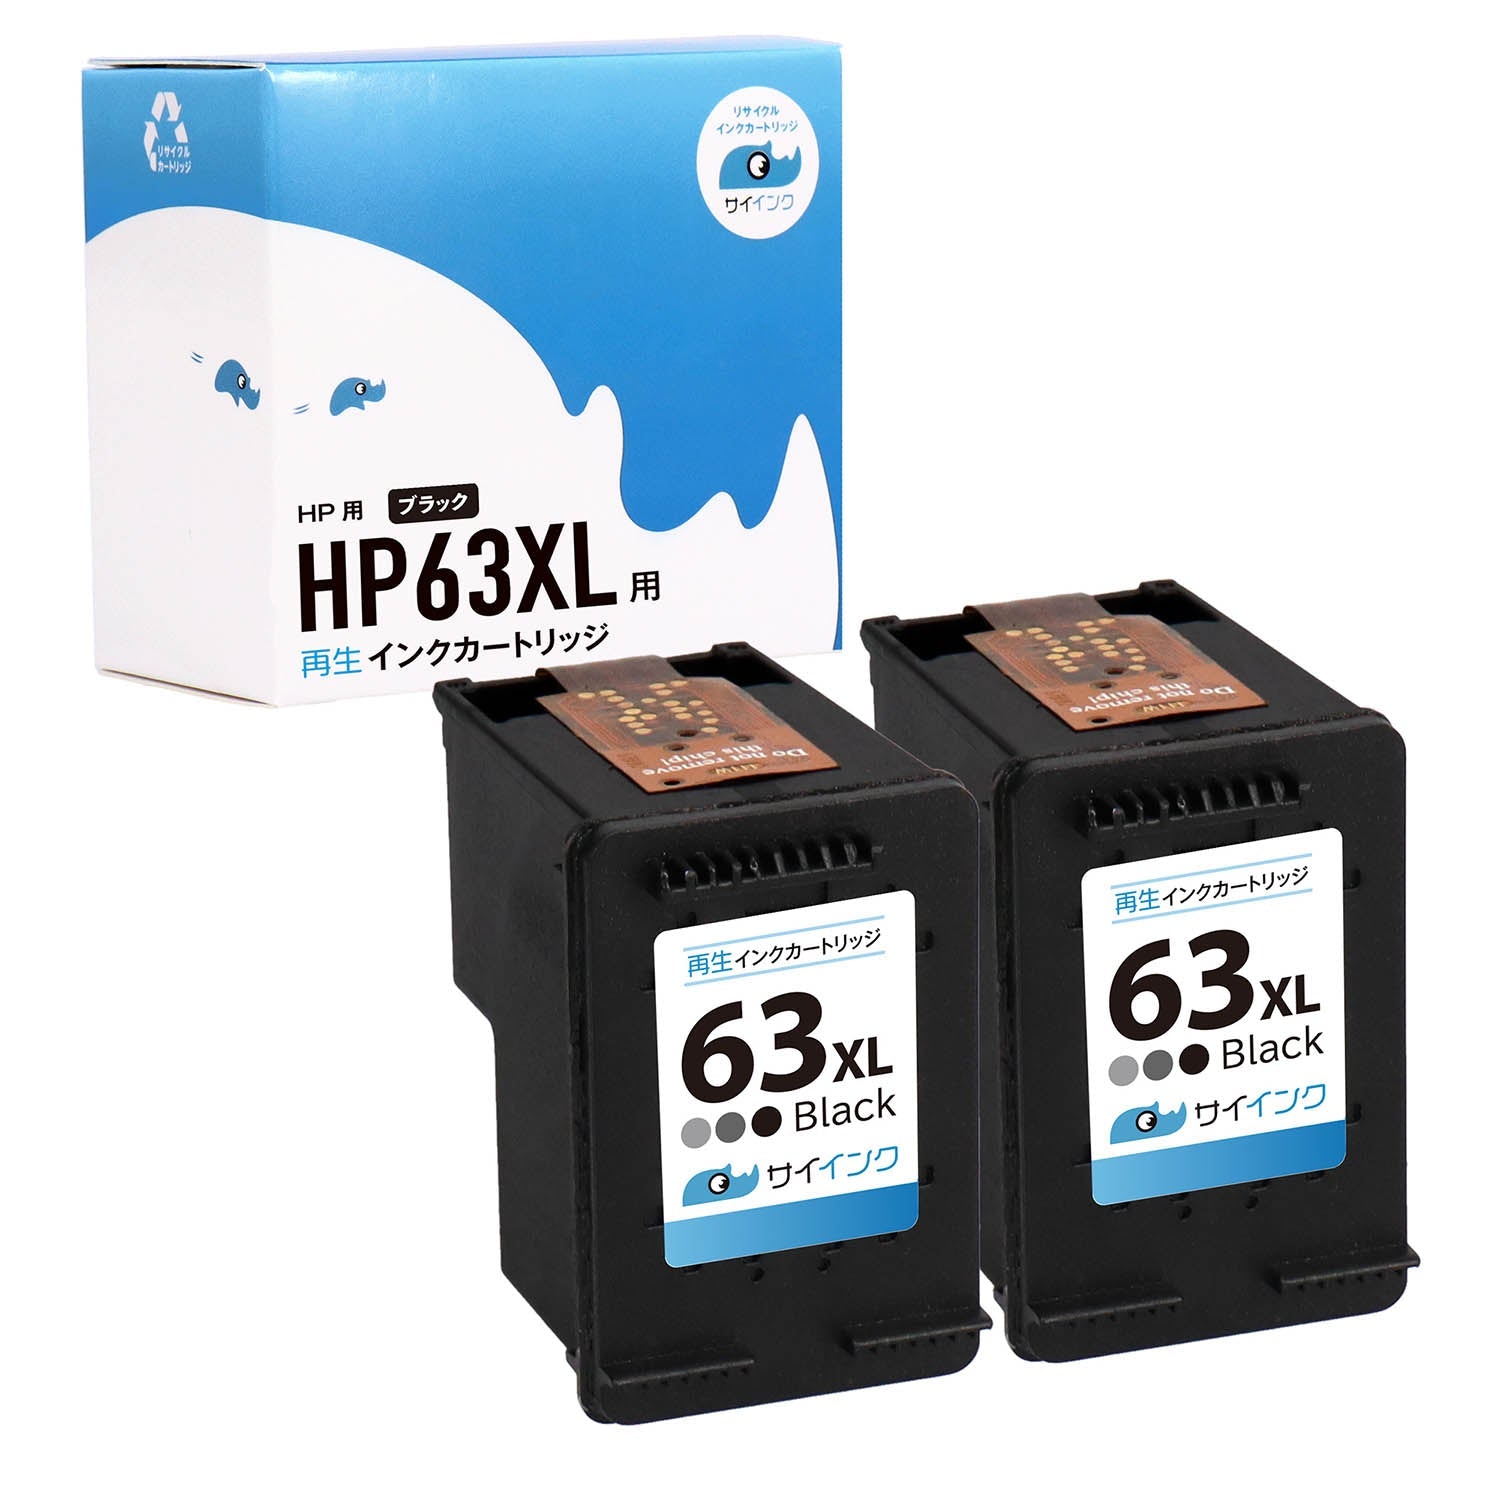 HP用 HP 63XL リサイクルインク ブラック×2 増量版